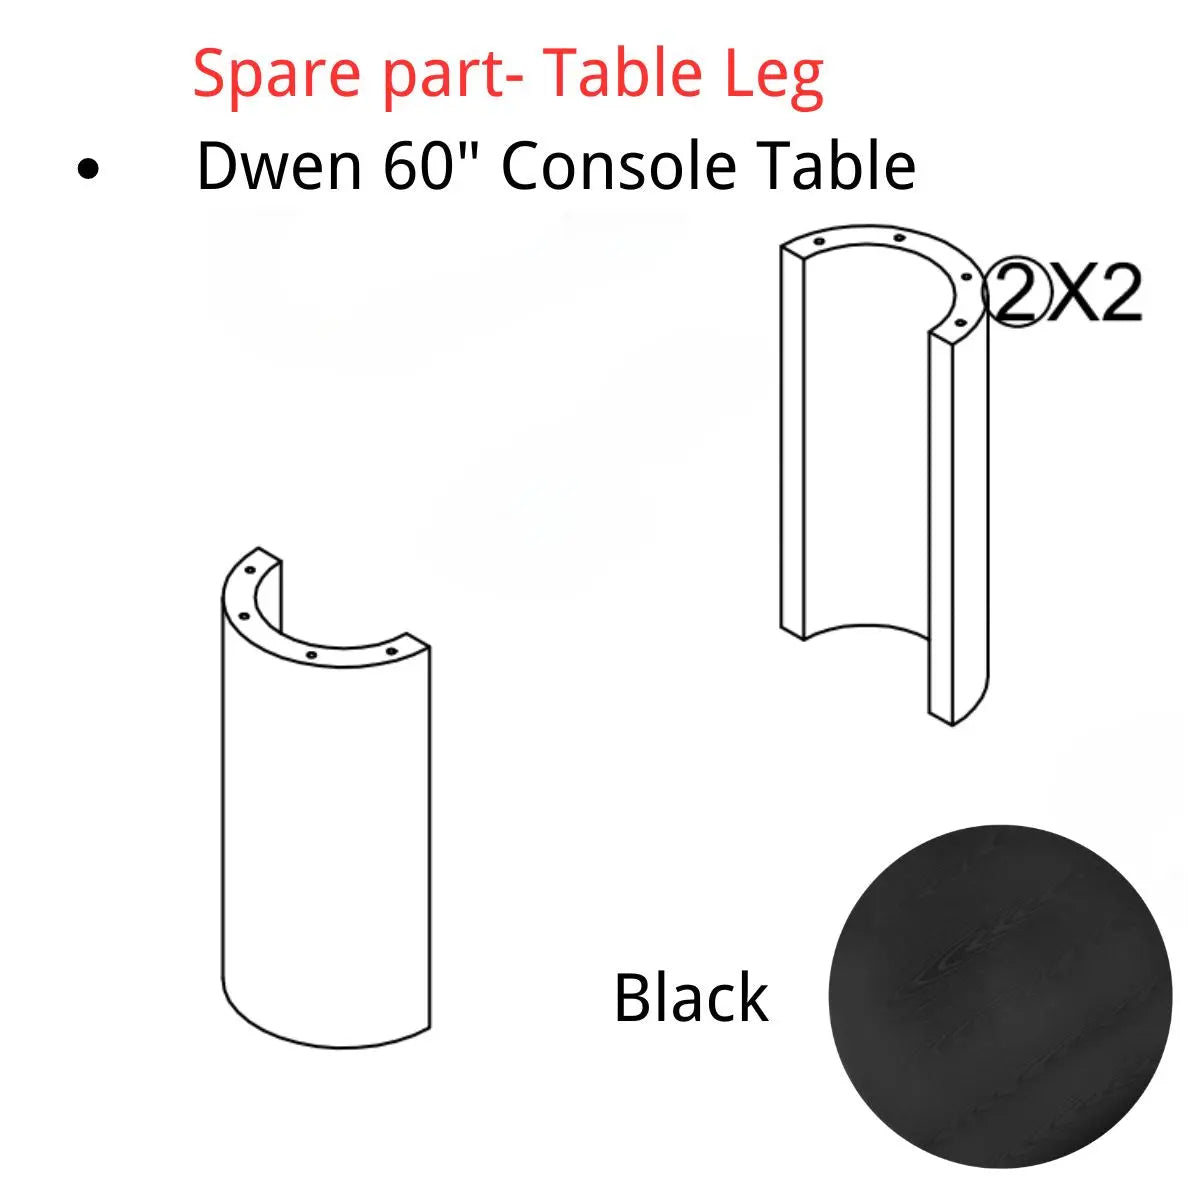 Spare Part-Dwen 60" Console Table Leg The Pop Maison